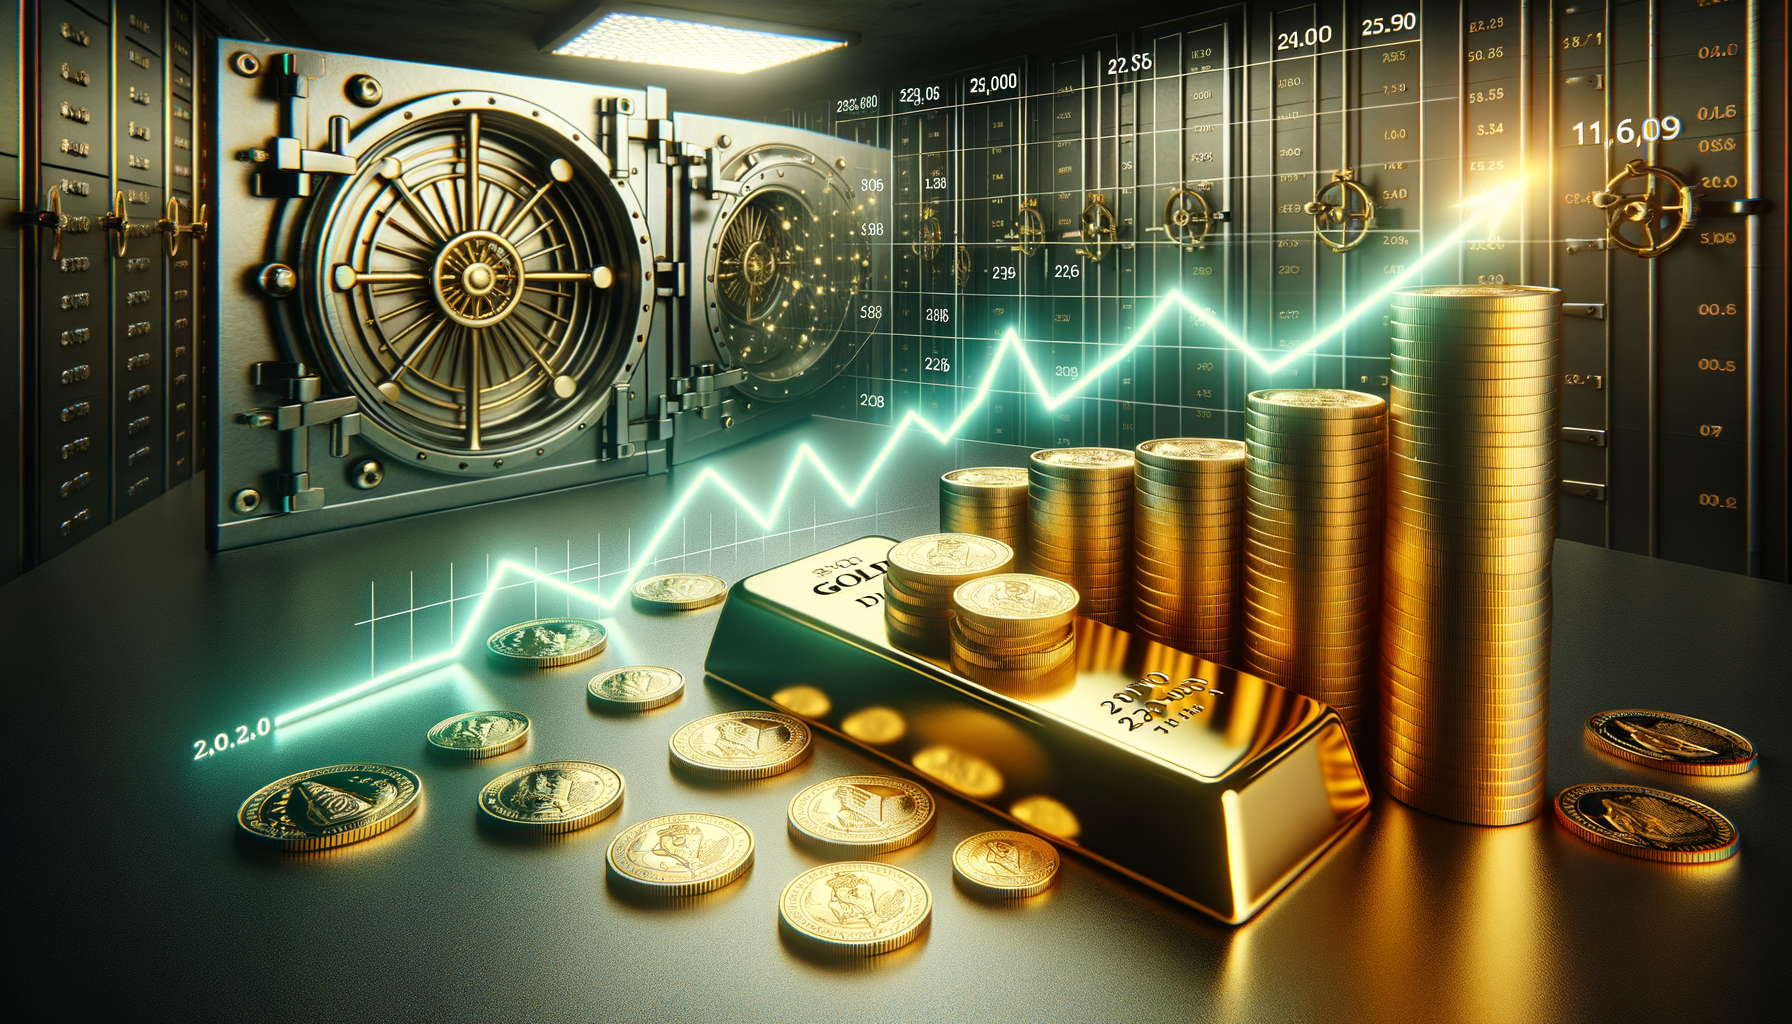 Ein Bild von Goldbarren und Münzen neben einem Diagramm, das die langfristige Wertsteigerung zeigt